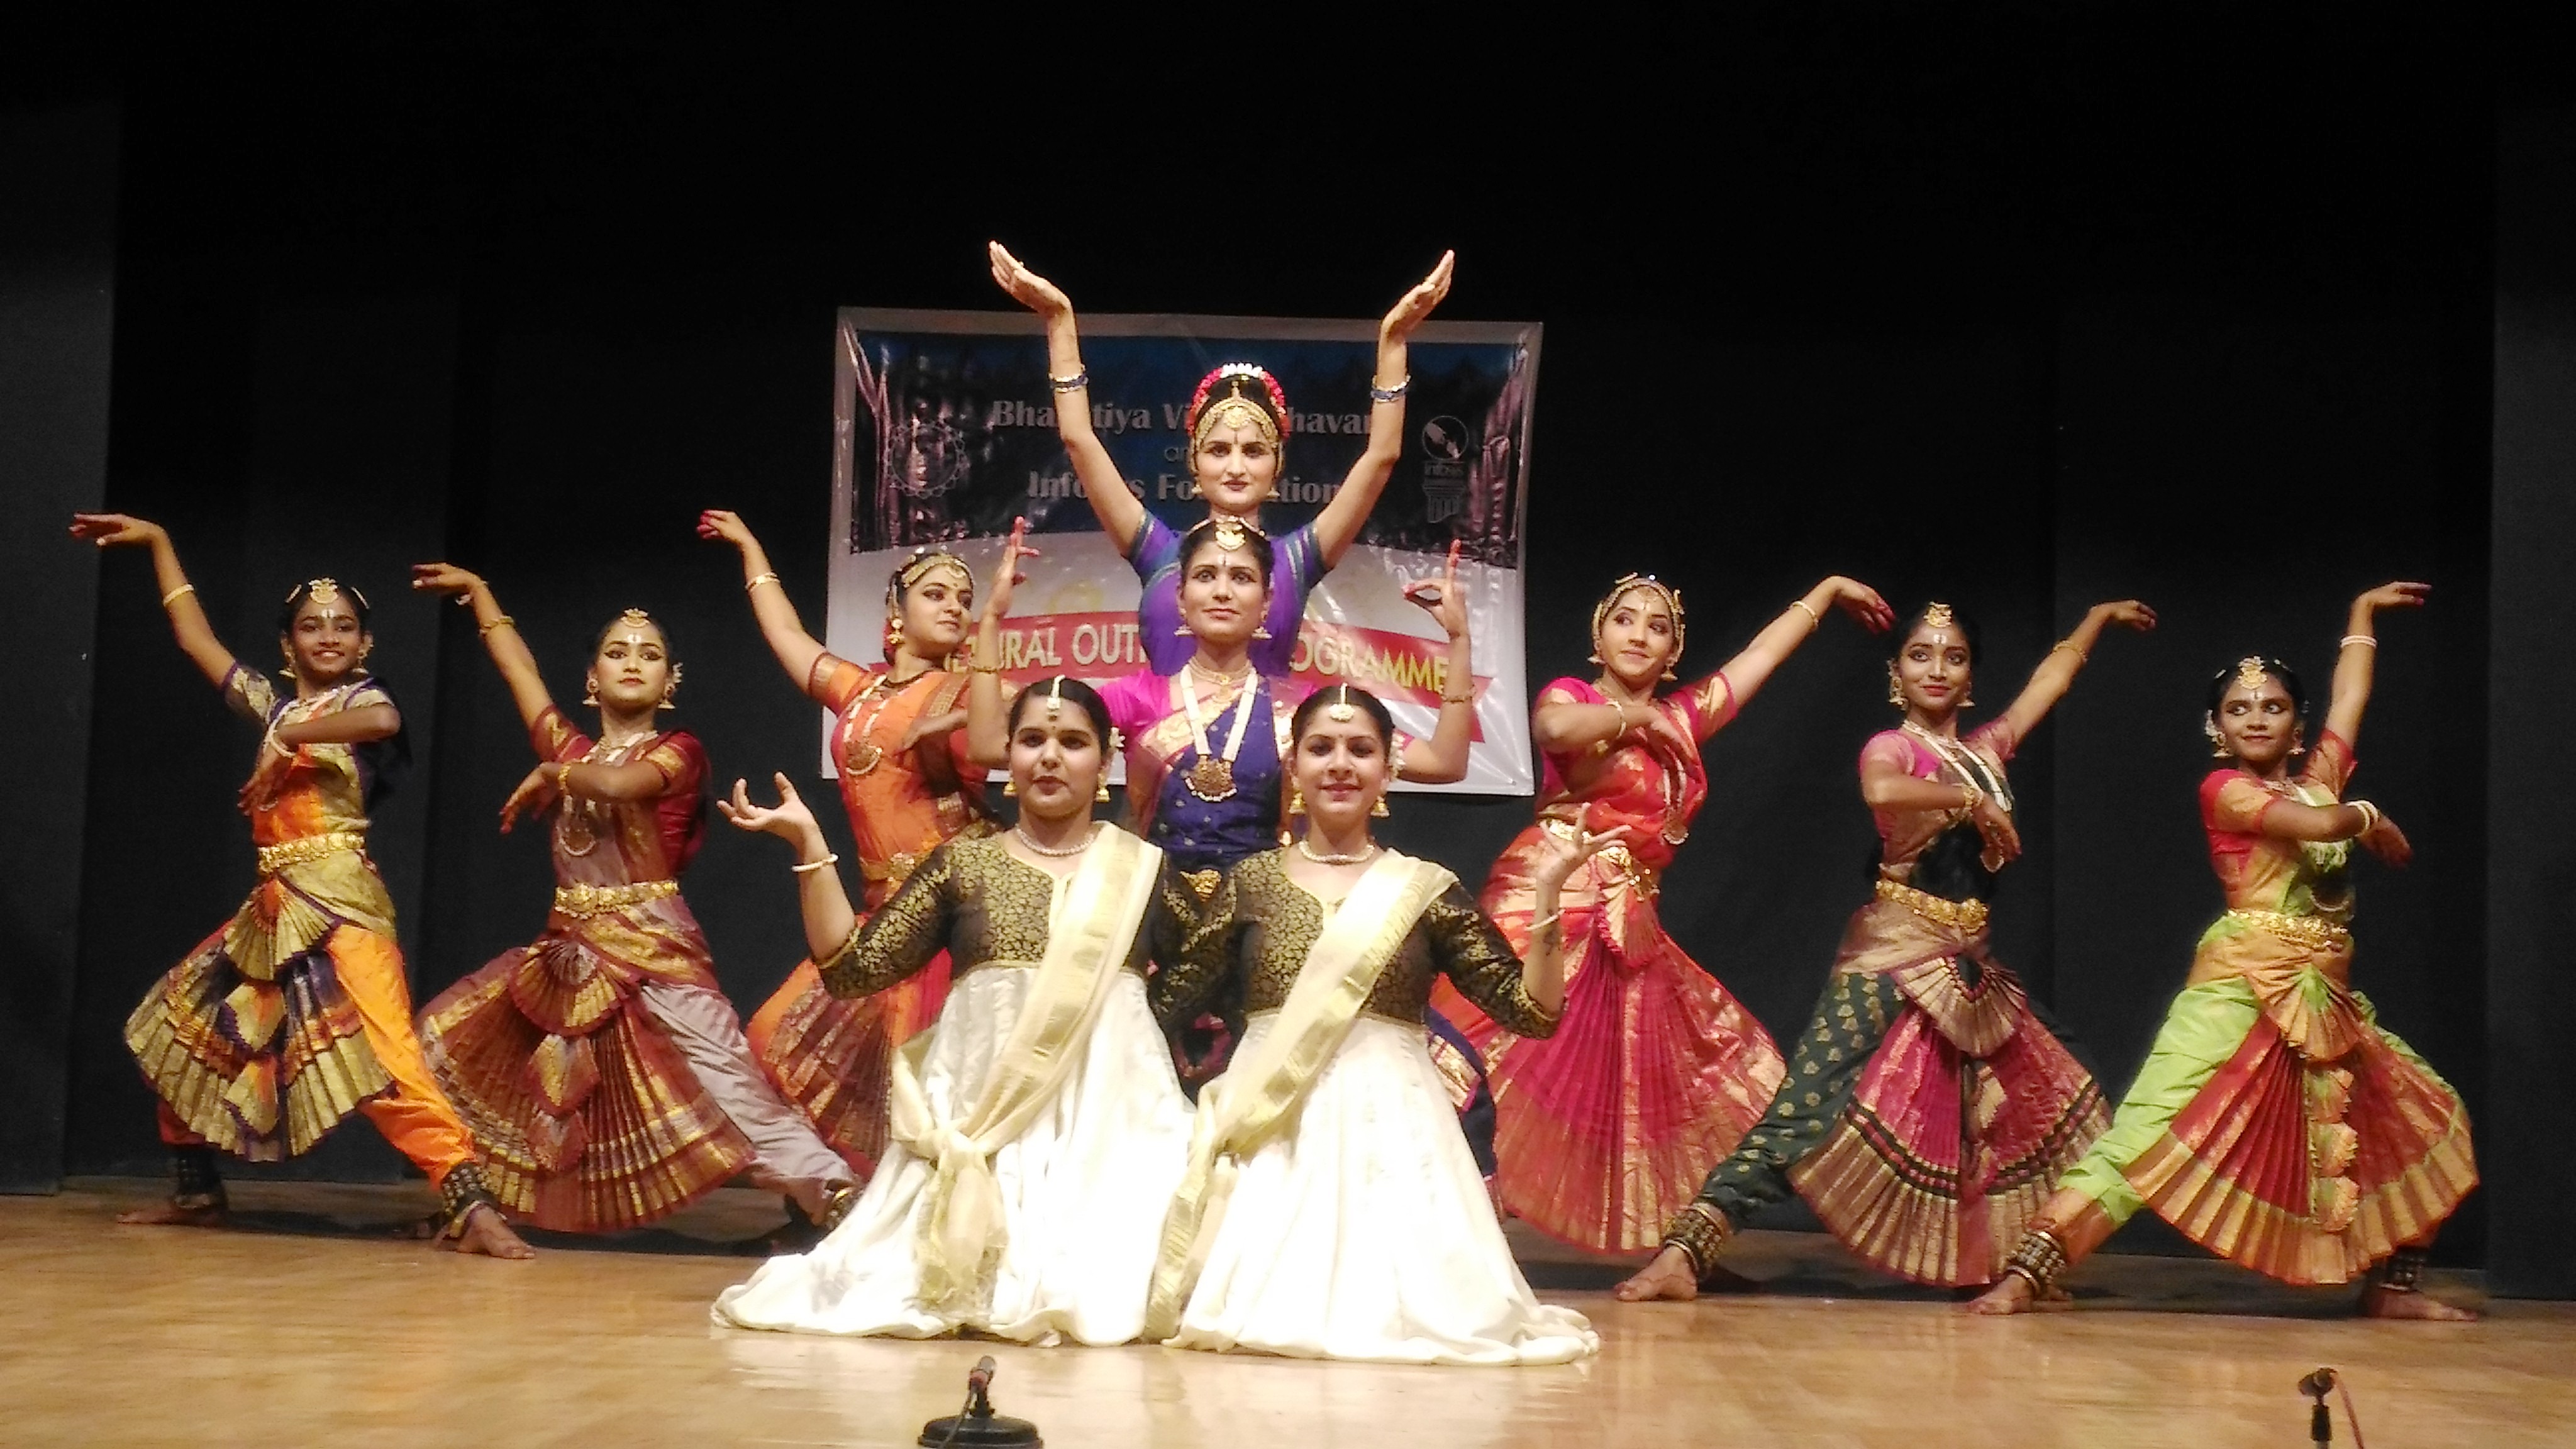 भारतीय विद्या भवन- इन्फोसिस फाऊंडेशन आयोजित 'शिवार्पणम' नृत्य कार्यक्रमाला चांगला प्रतिसाद